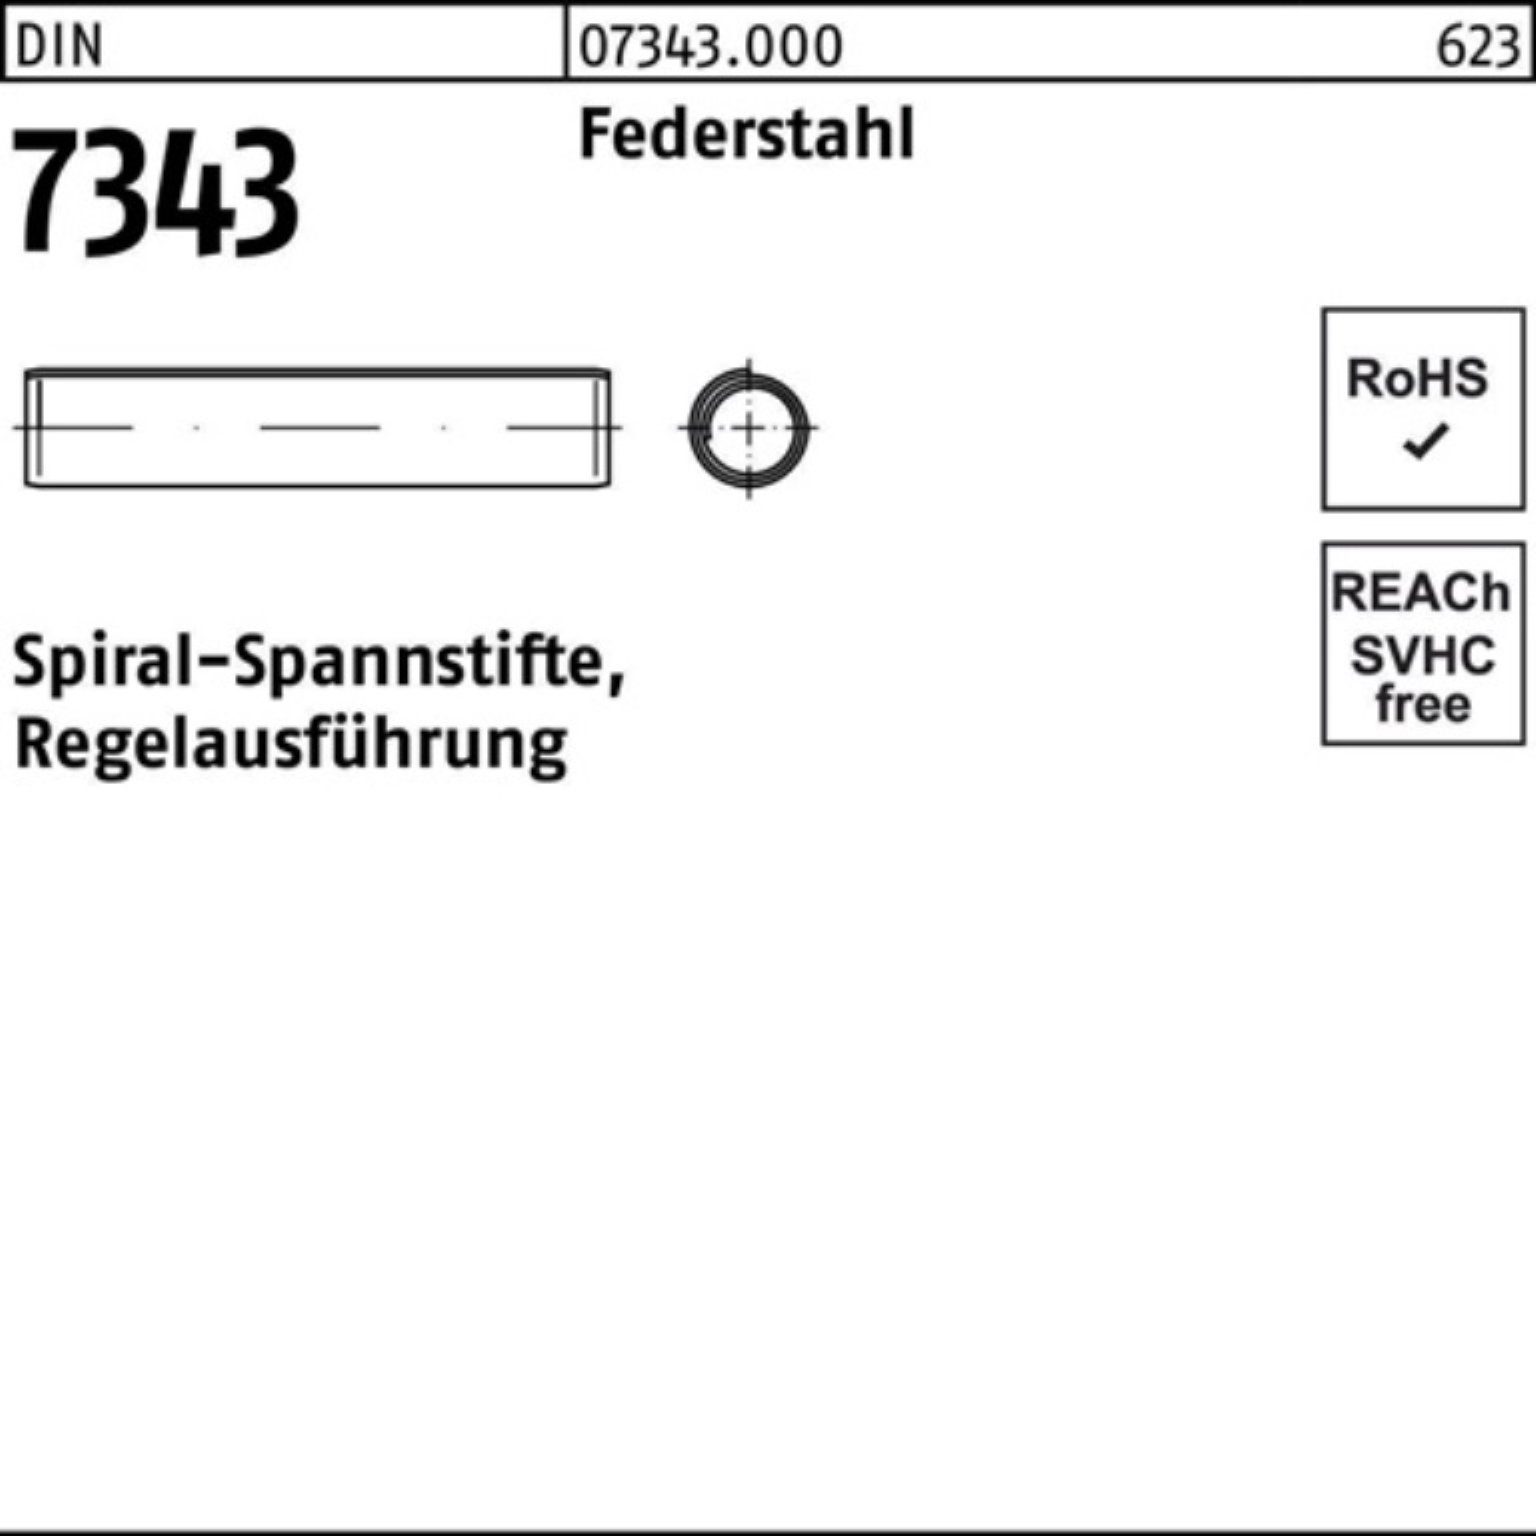 7343/ISO Spiralspannstift Regela Spannstift Reyher Federstahl DIN 8750 14 3x 1000er Pack